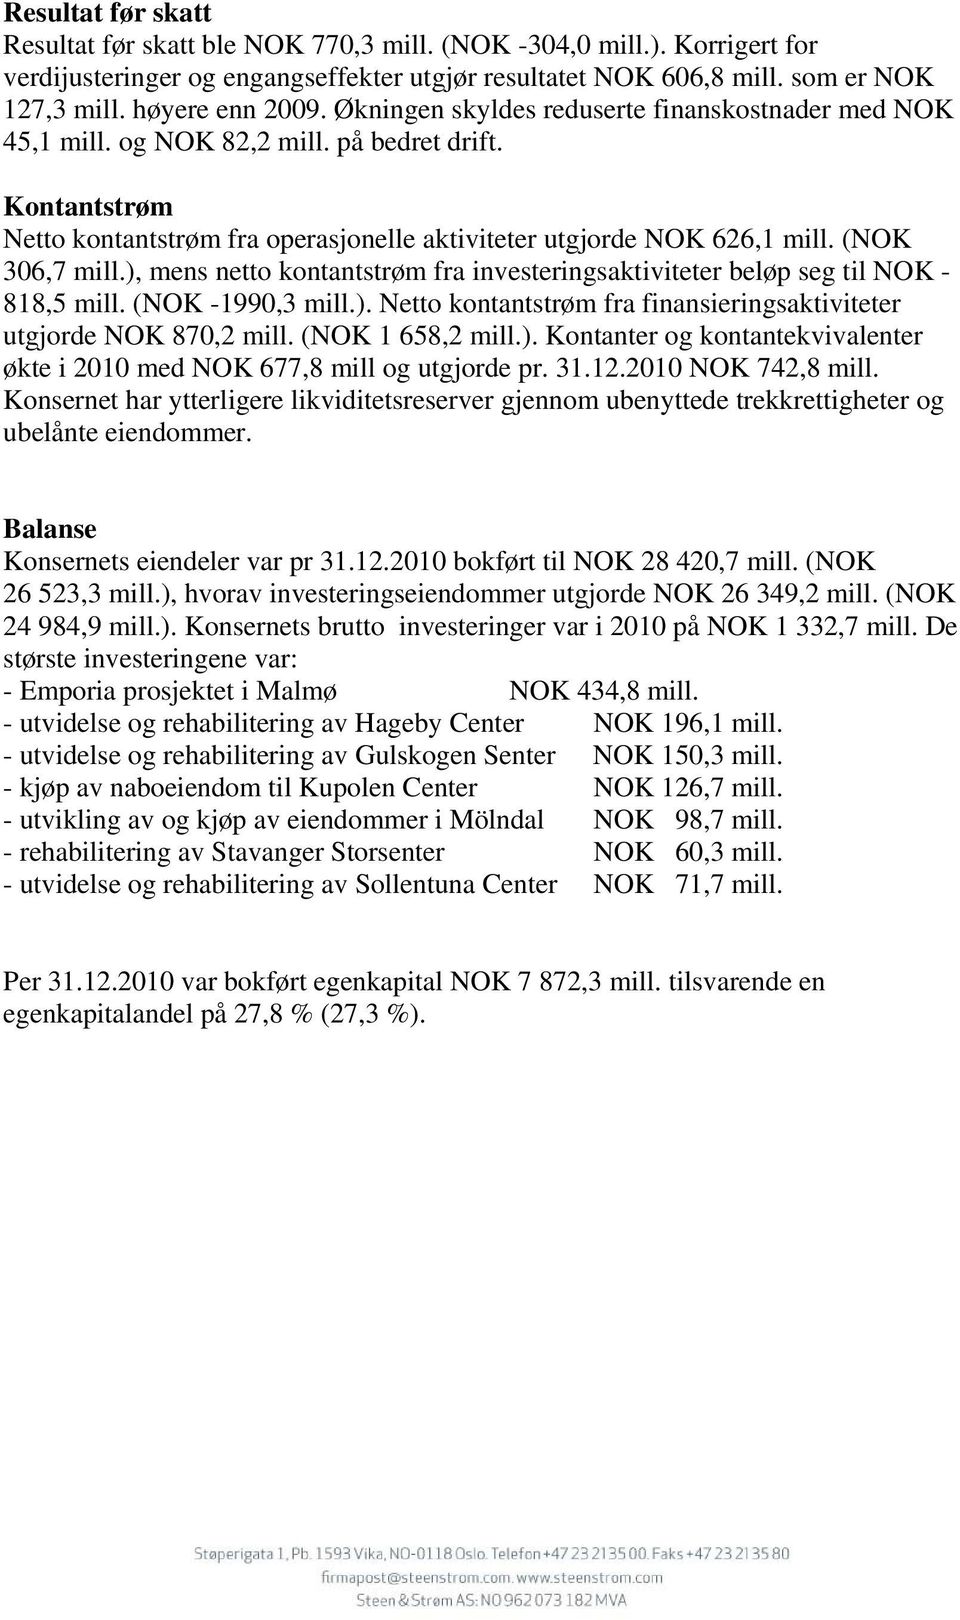 (NOK 306,7 mill.), mens netto kontantstrøm fra investeringsaktiviteter beløp seg til NOK - 818,5 mill. (NOK -1990,3 mill.). Netto kontantstrøm fra finansieringsaktiviteter utgjorde NOK 870,2 mill.